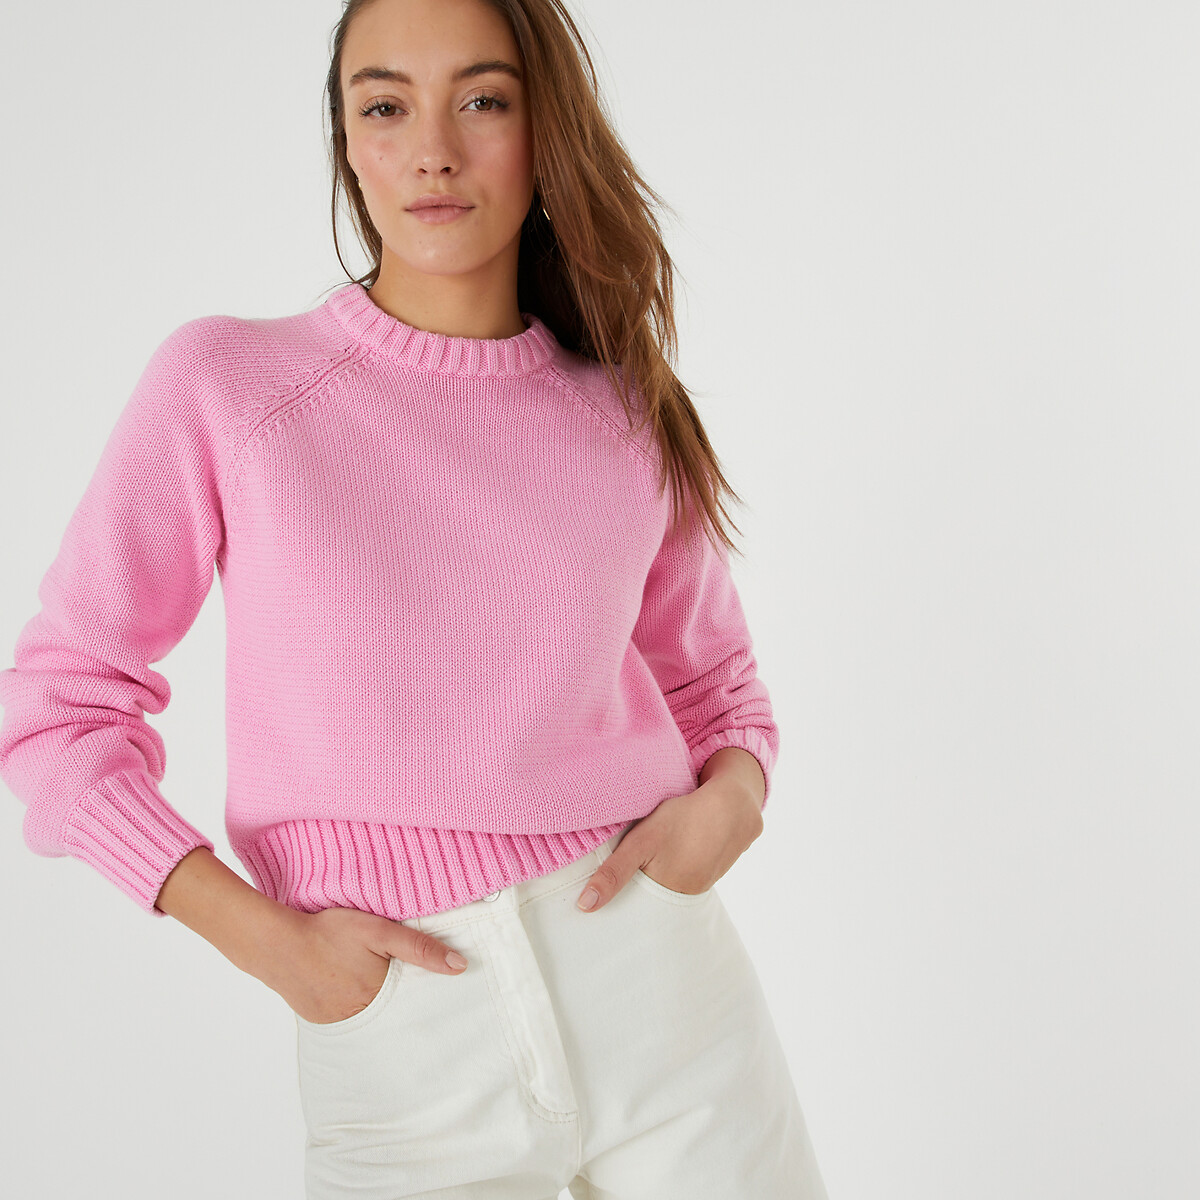 Пуловер с круглым вырезом из плотного трикотажа XS розовый пуловер с круглым вырезом из плотного трикотажа 3 мес 4 года 3 мес 60 см бежевый